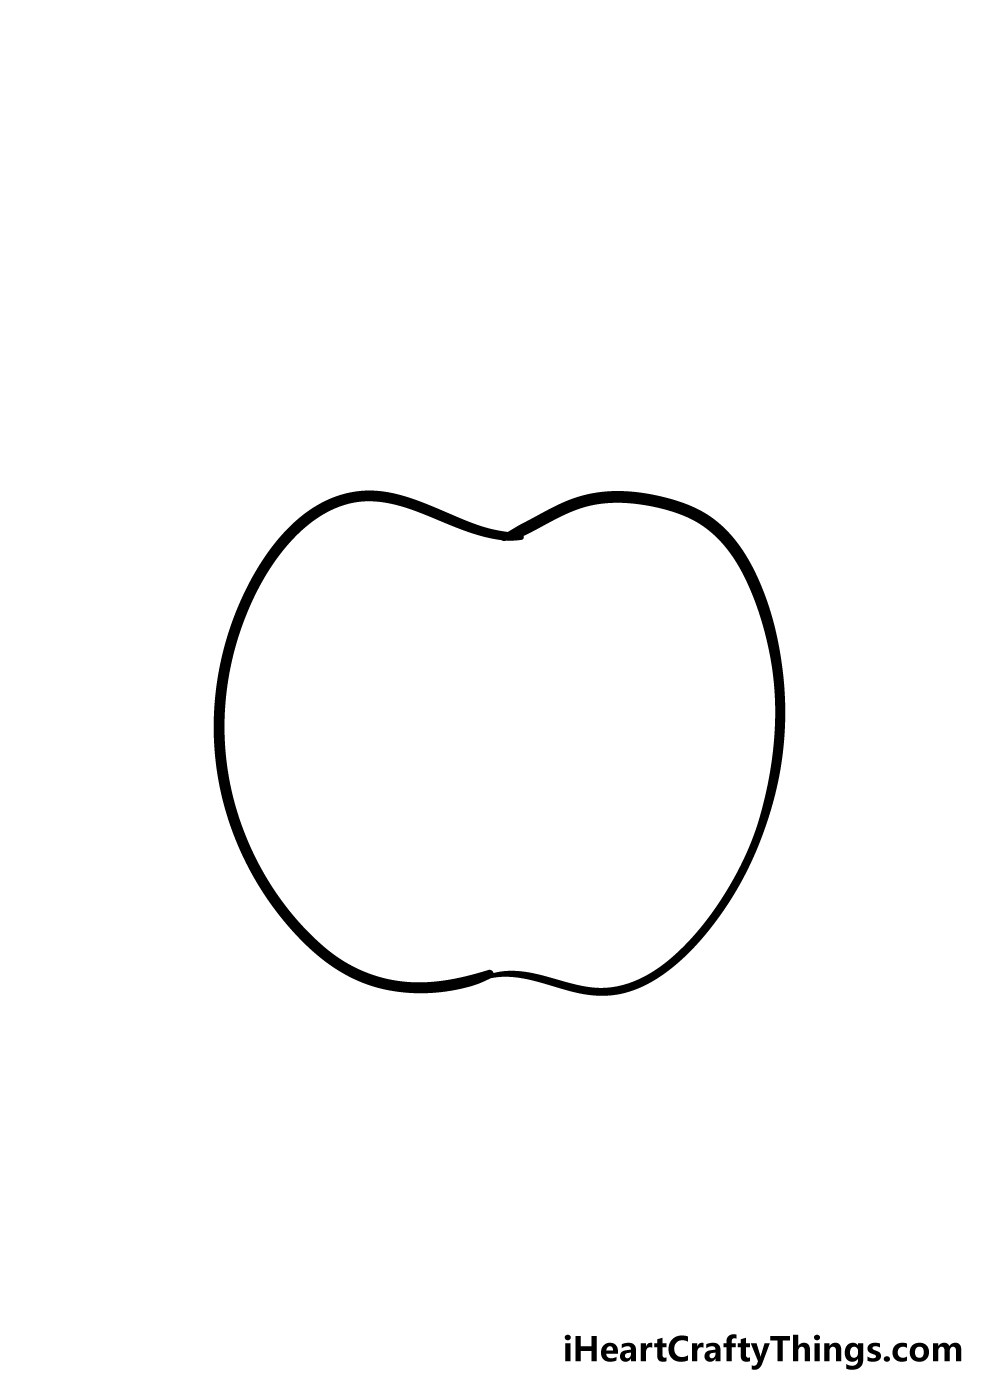 Apple 2 - Hướng dẫn chi tiết cách vẽ quả táo đơn giản với 6 bước cơ bản